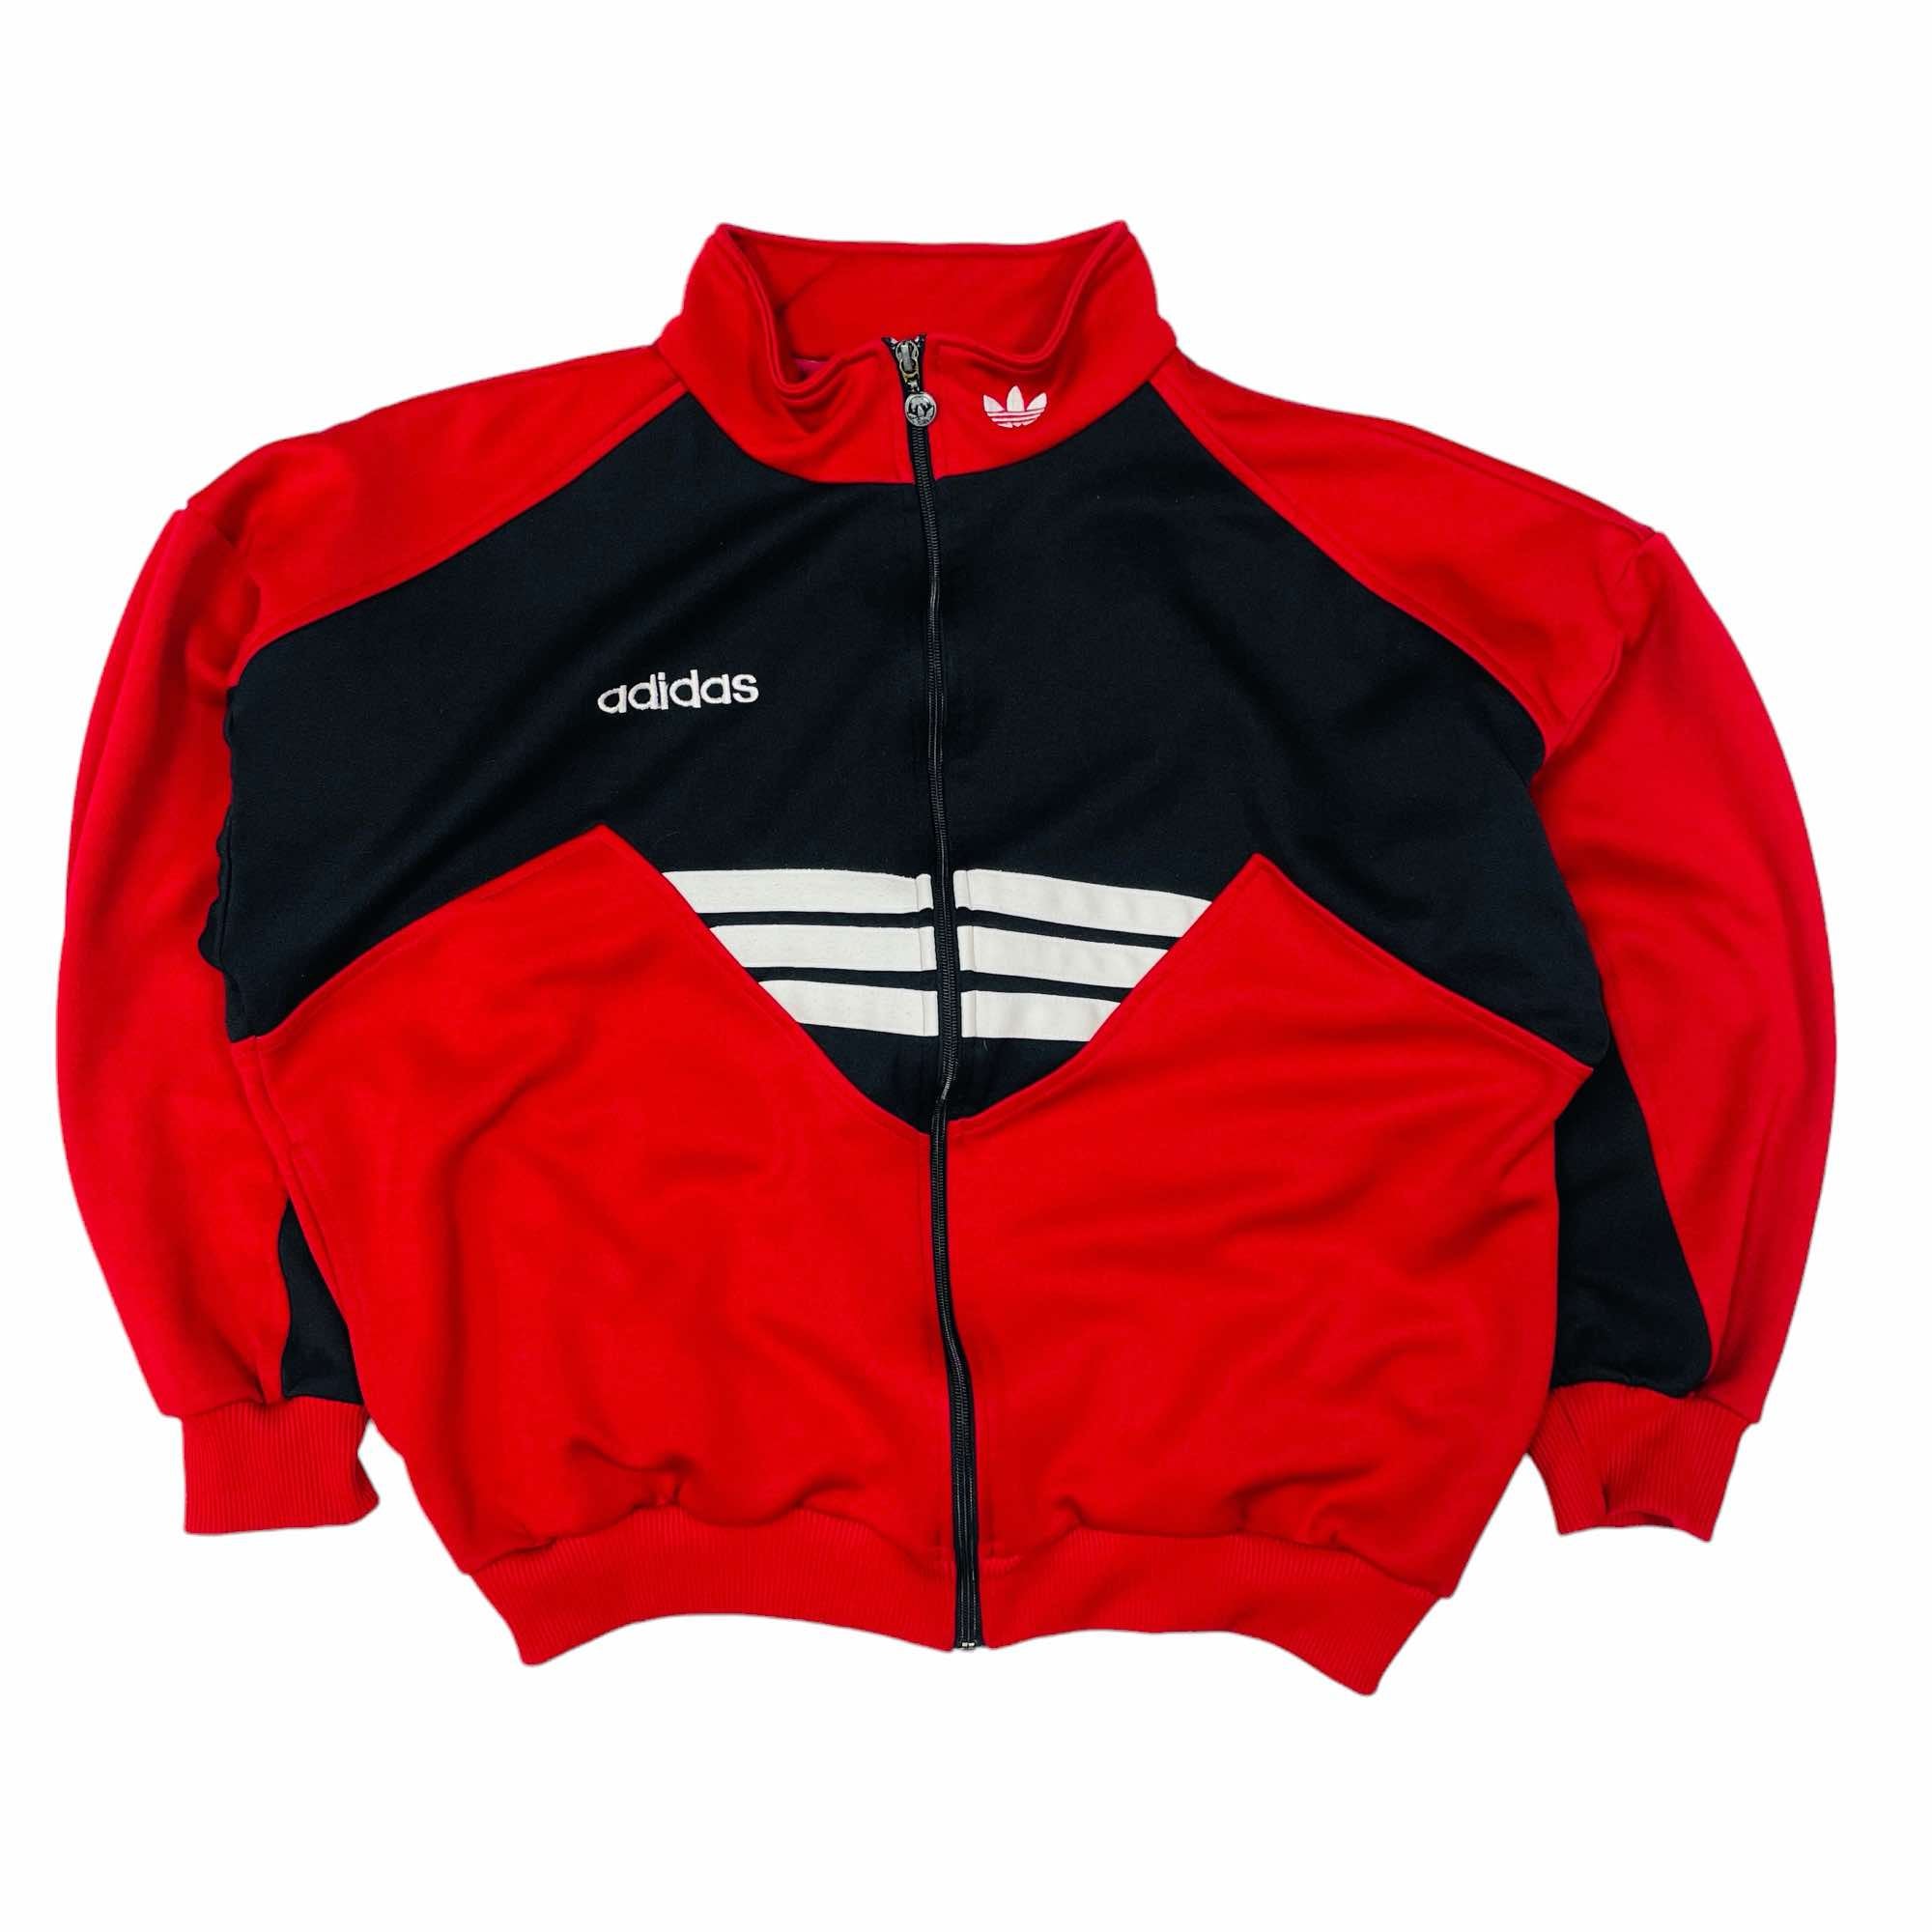 90s Adidas Track Jacket - Large